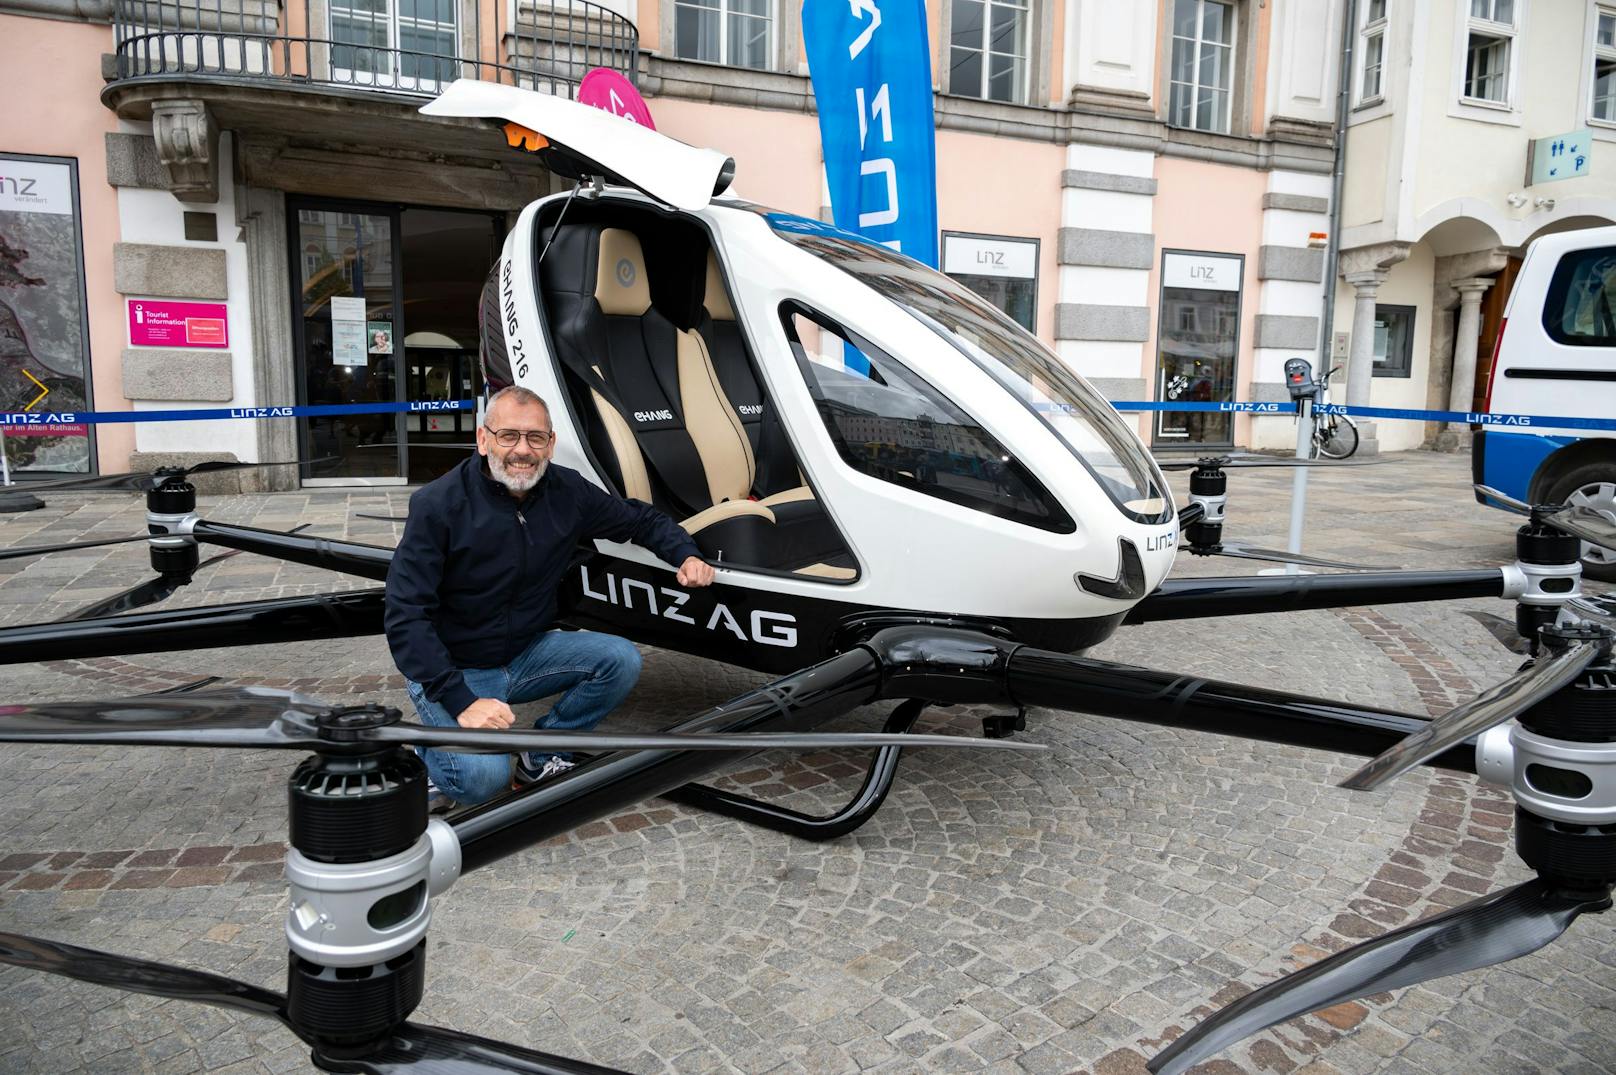 Am Hauptplatz ist die Drohne der Linz AG zu bewundern.